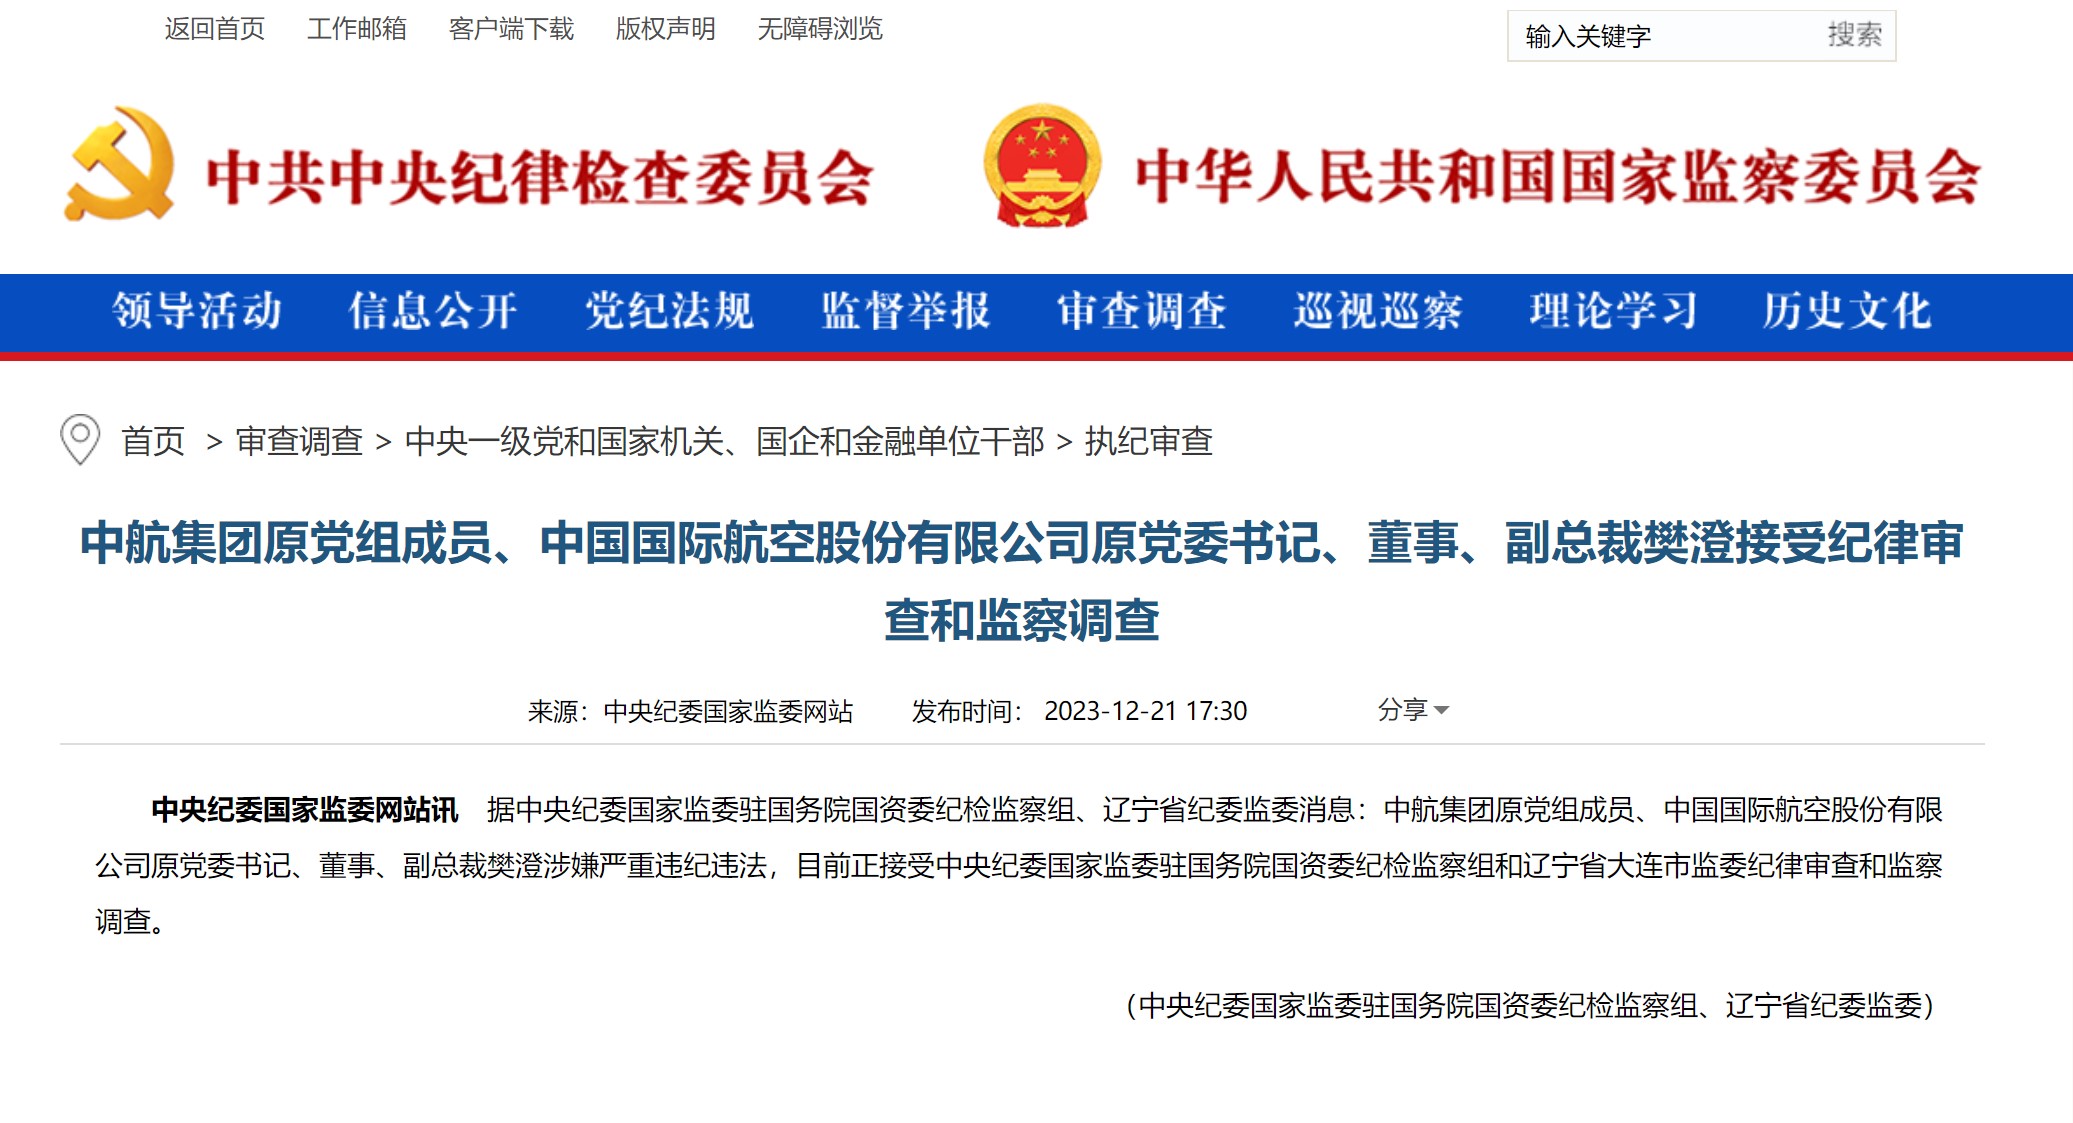 中国国际航空股份有限公司原党委书记、董事、副总裁樊澄接受纪律审查和监察调查